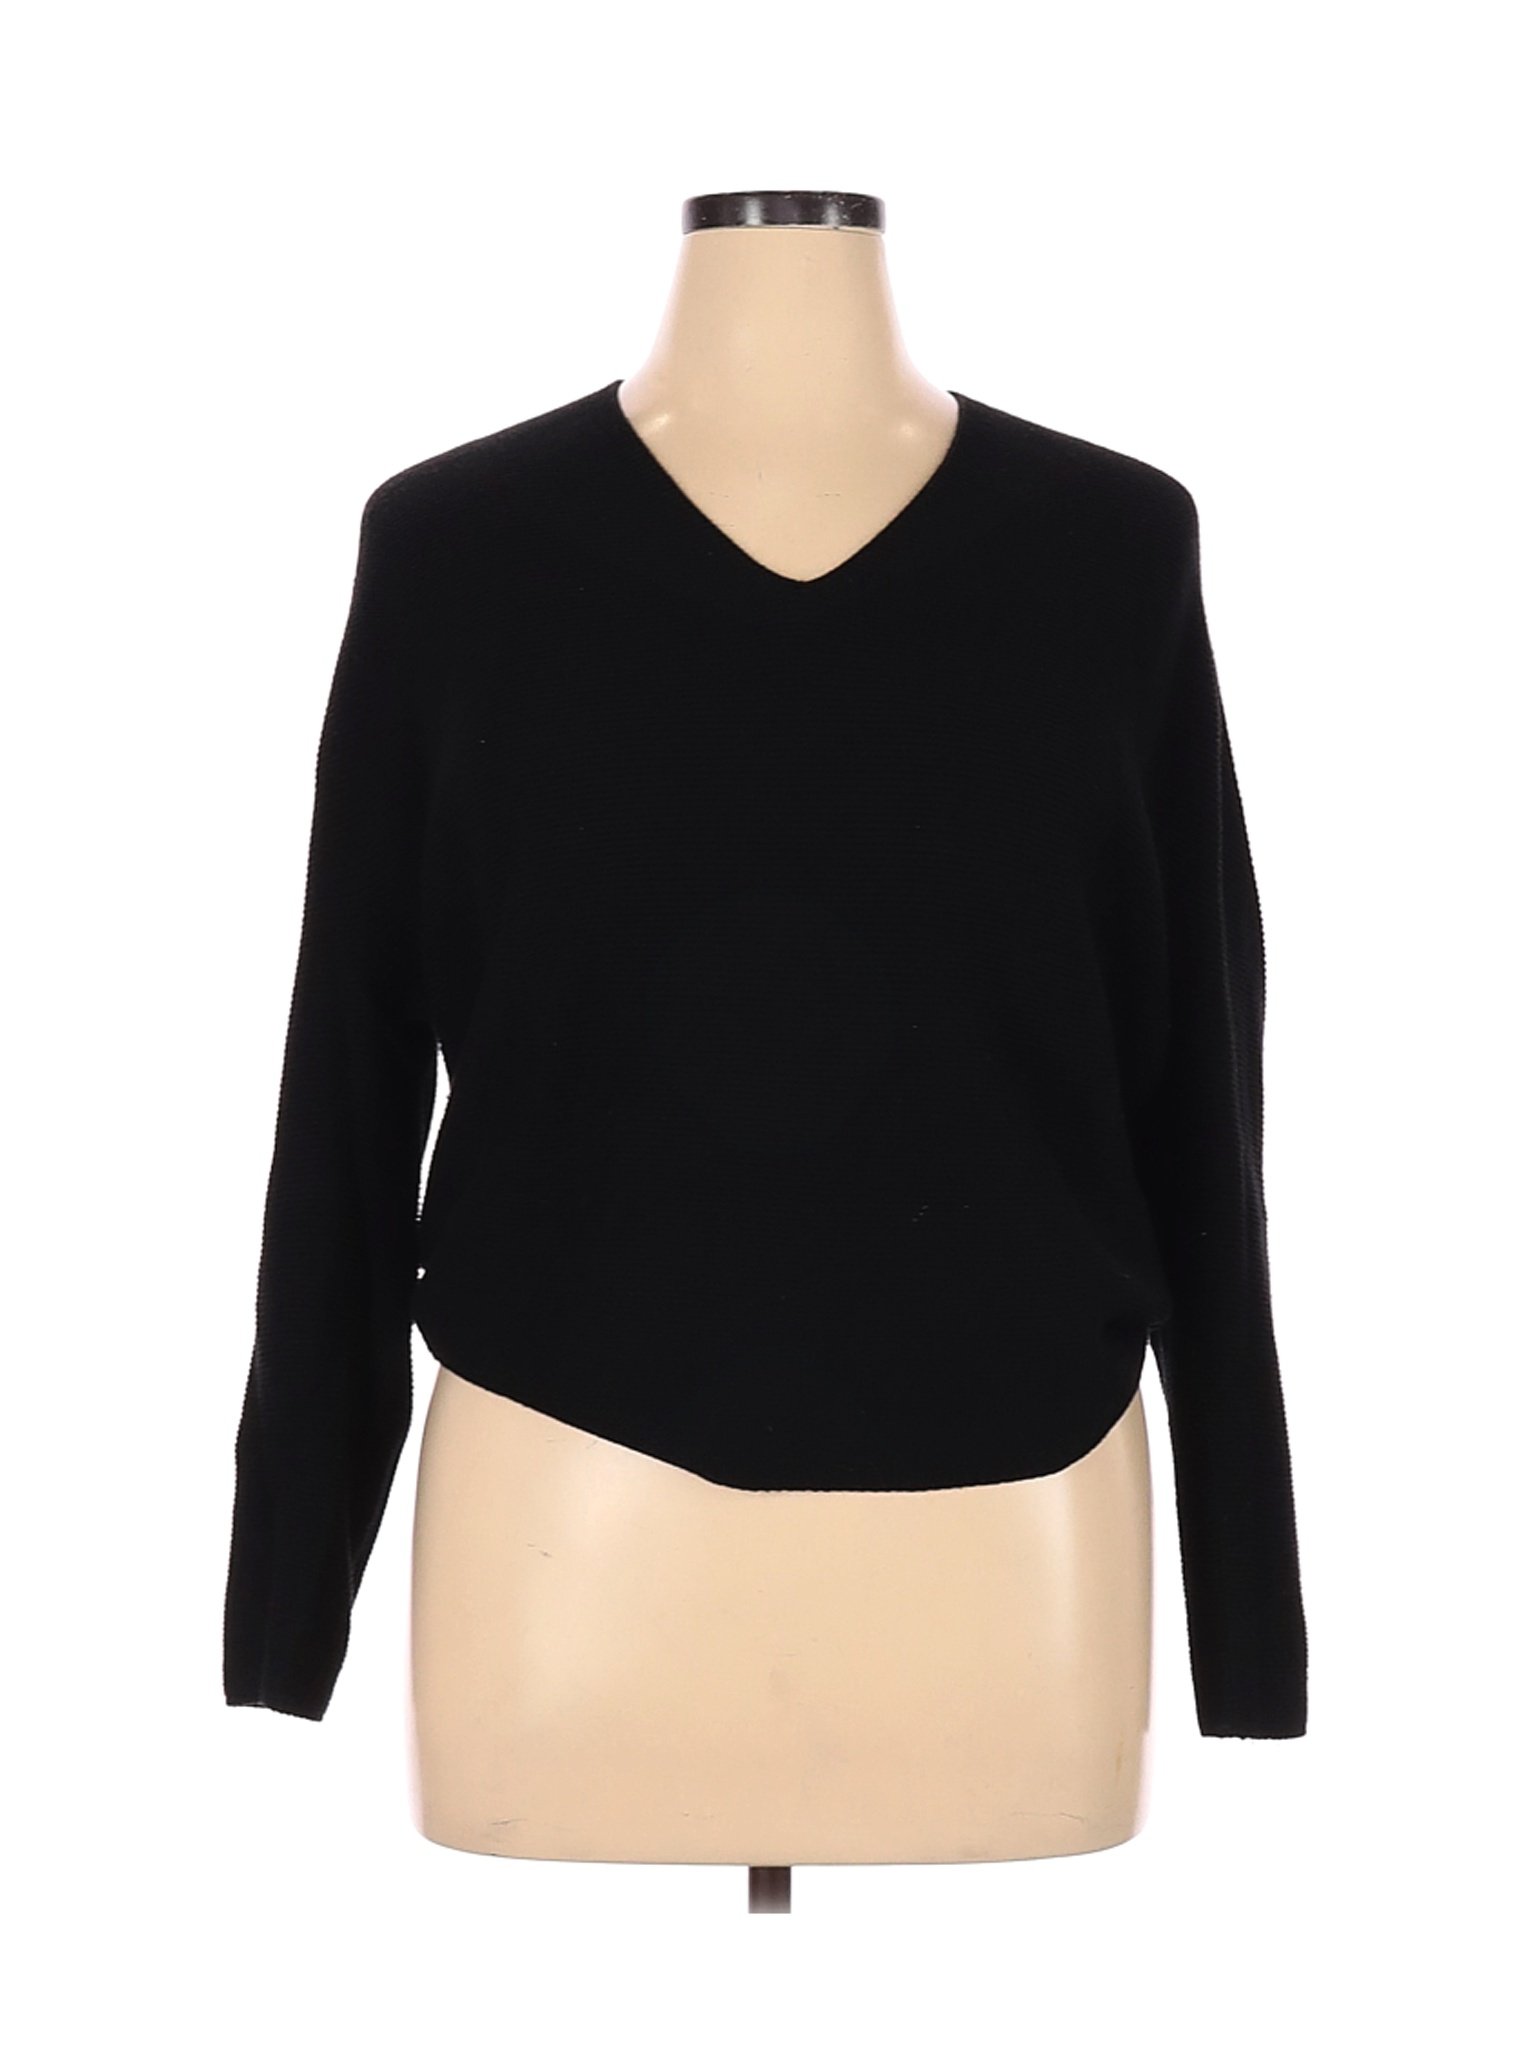 Uniqlo Women Black Pullover Sweater XL | eBay